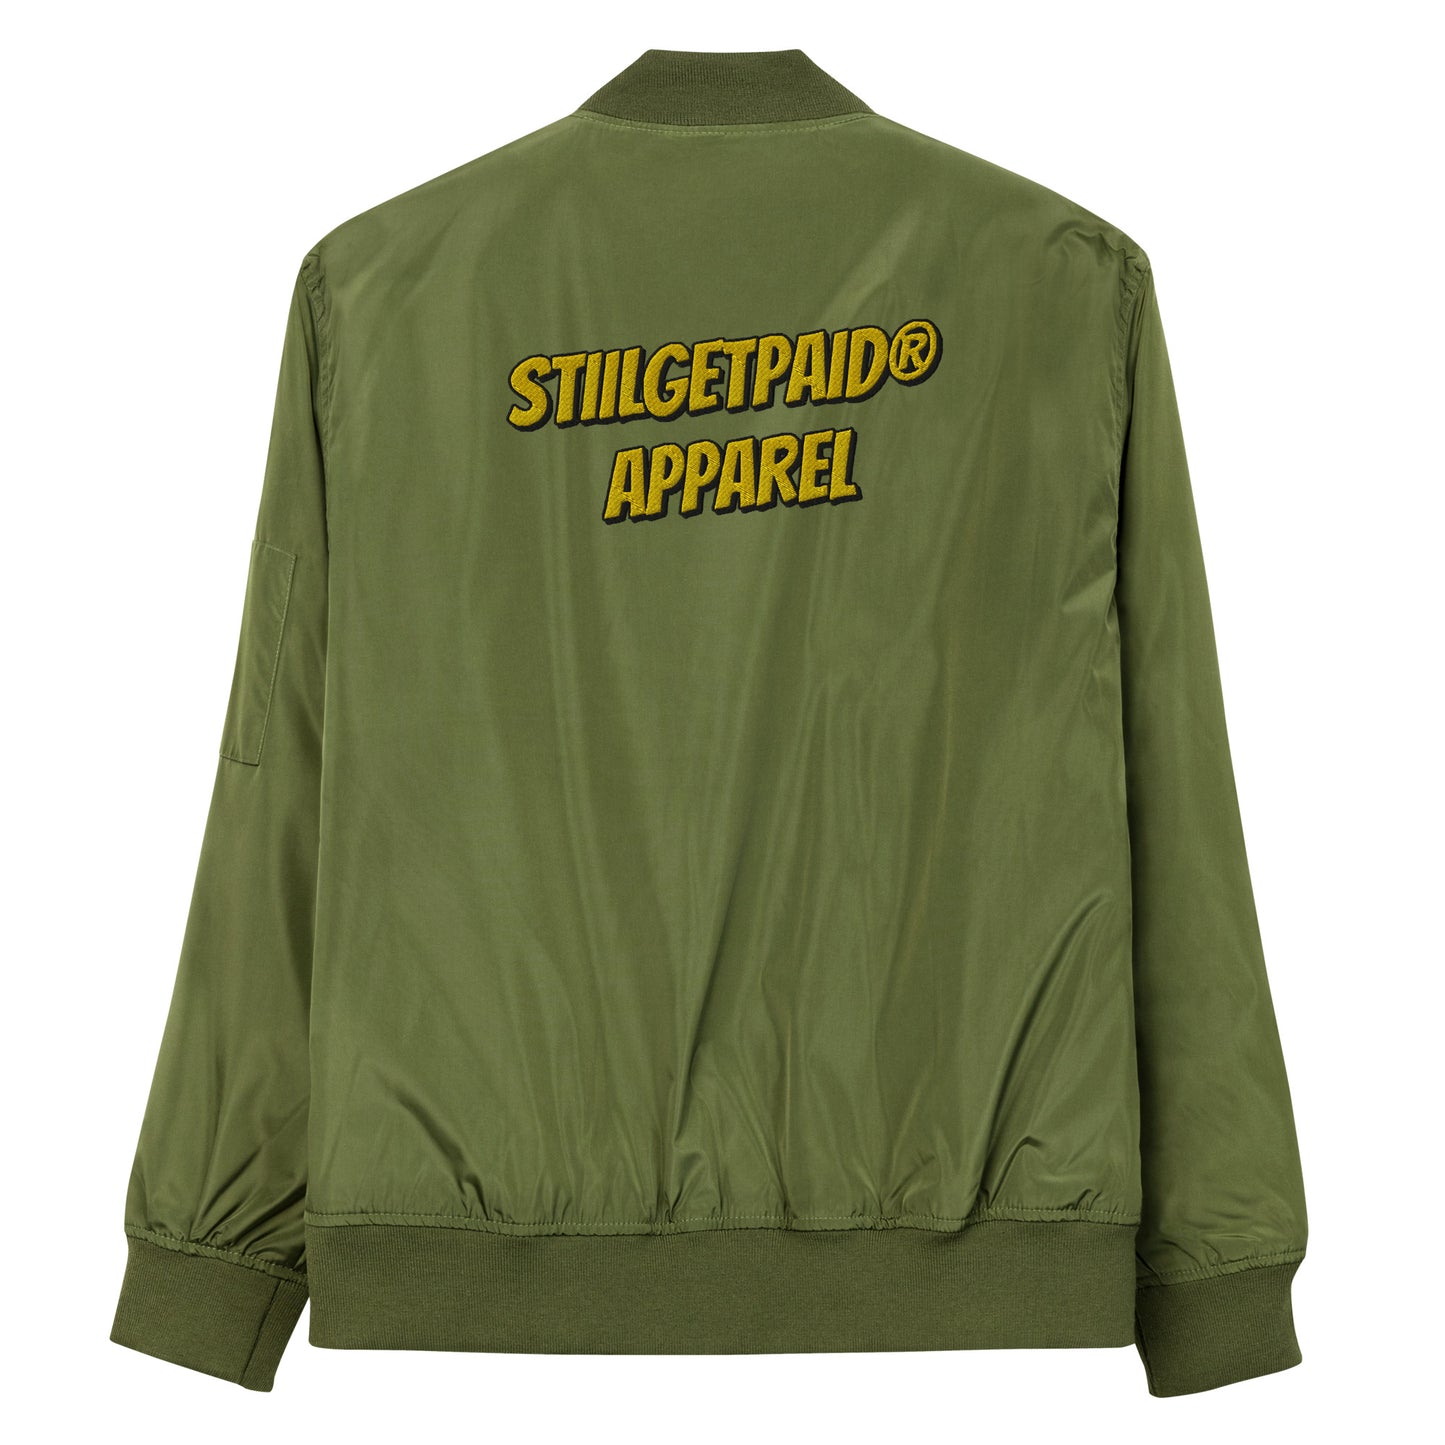 STILLGETPAID APPAREL bomber jacket